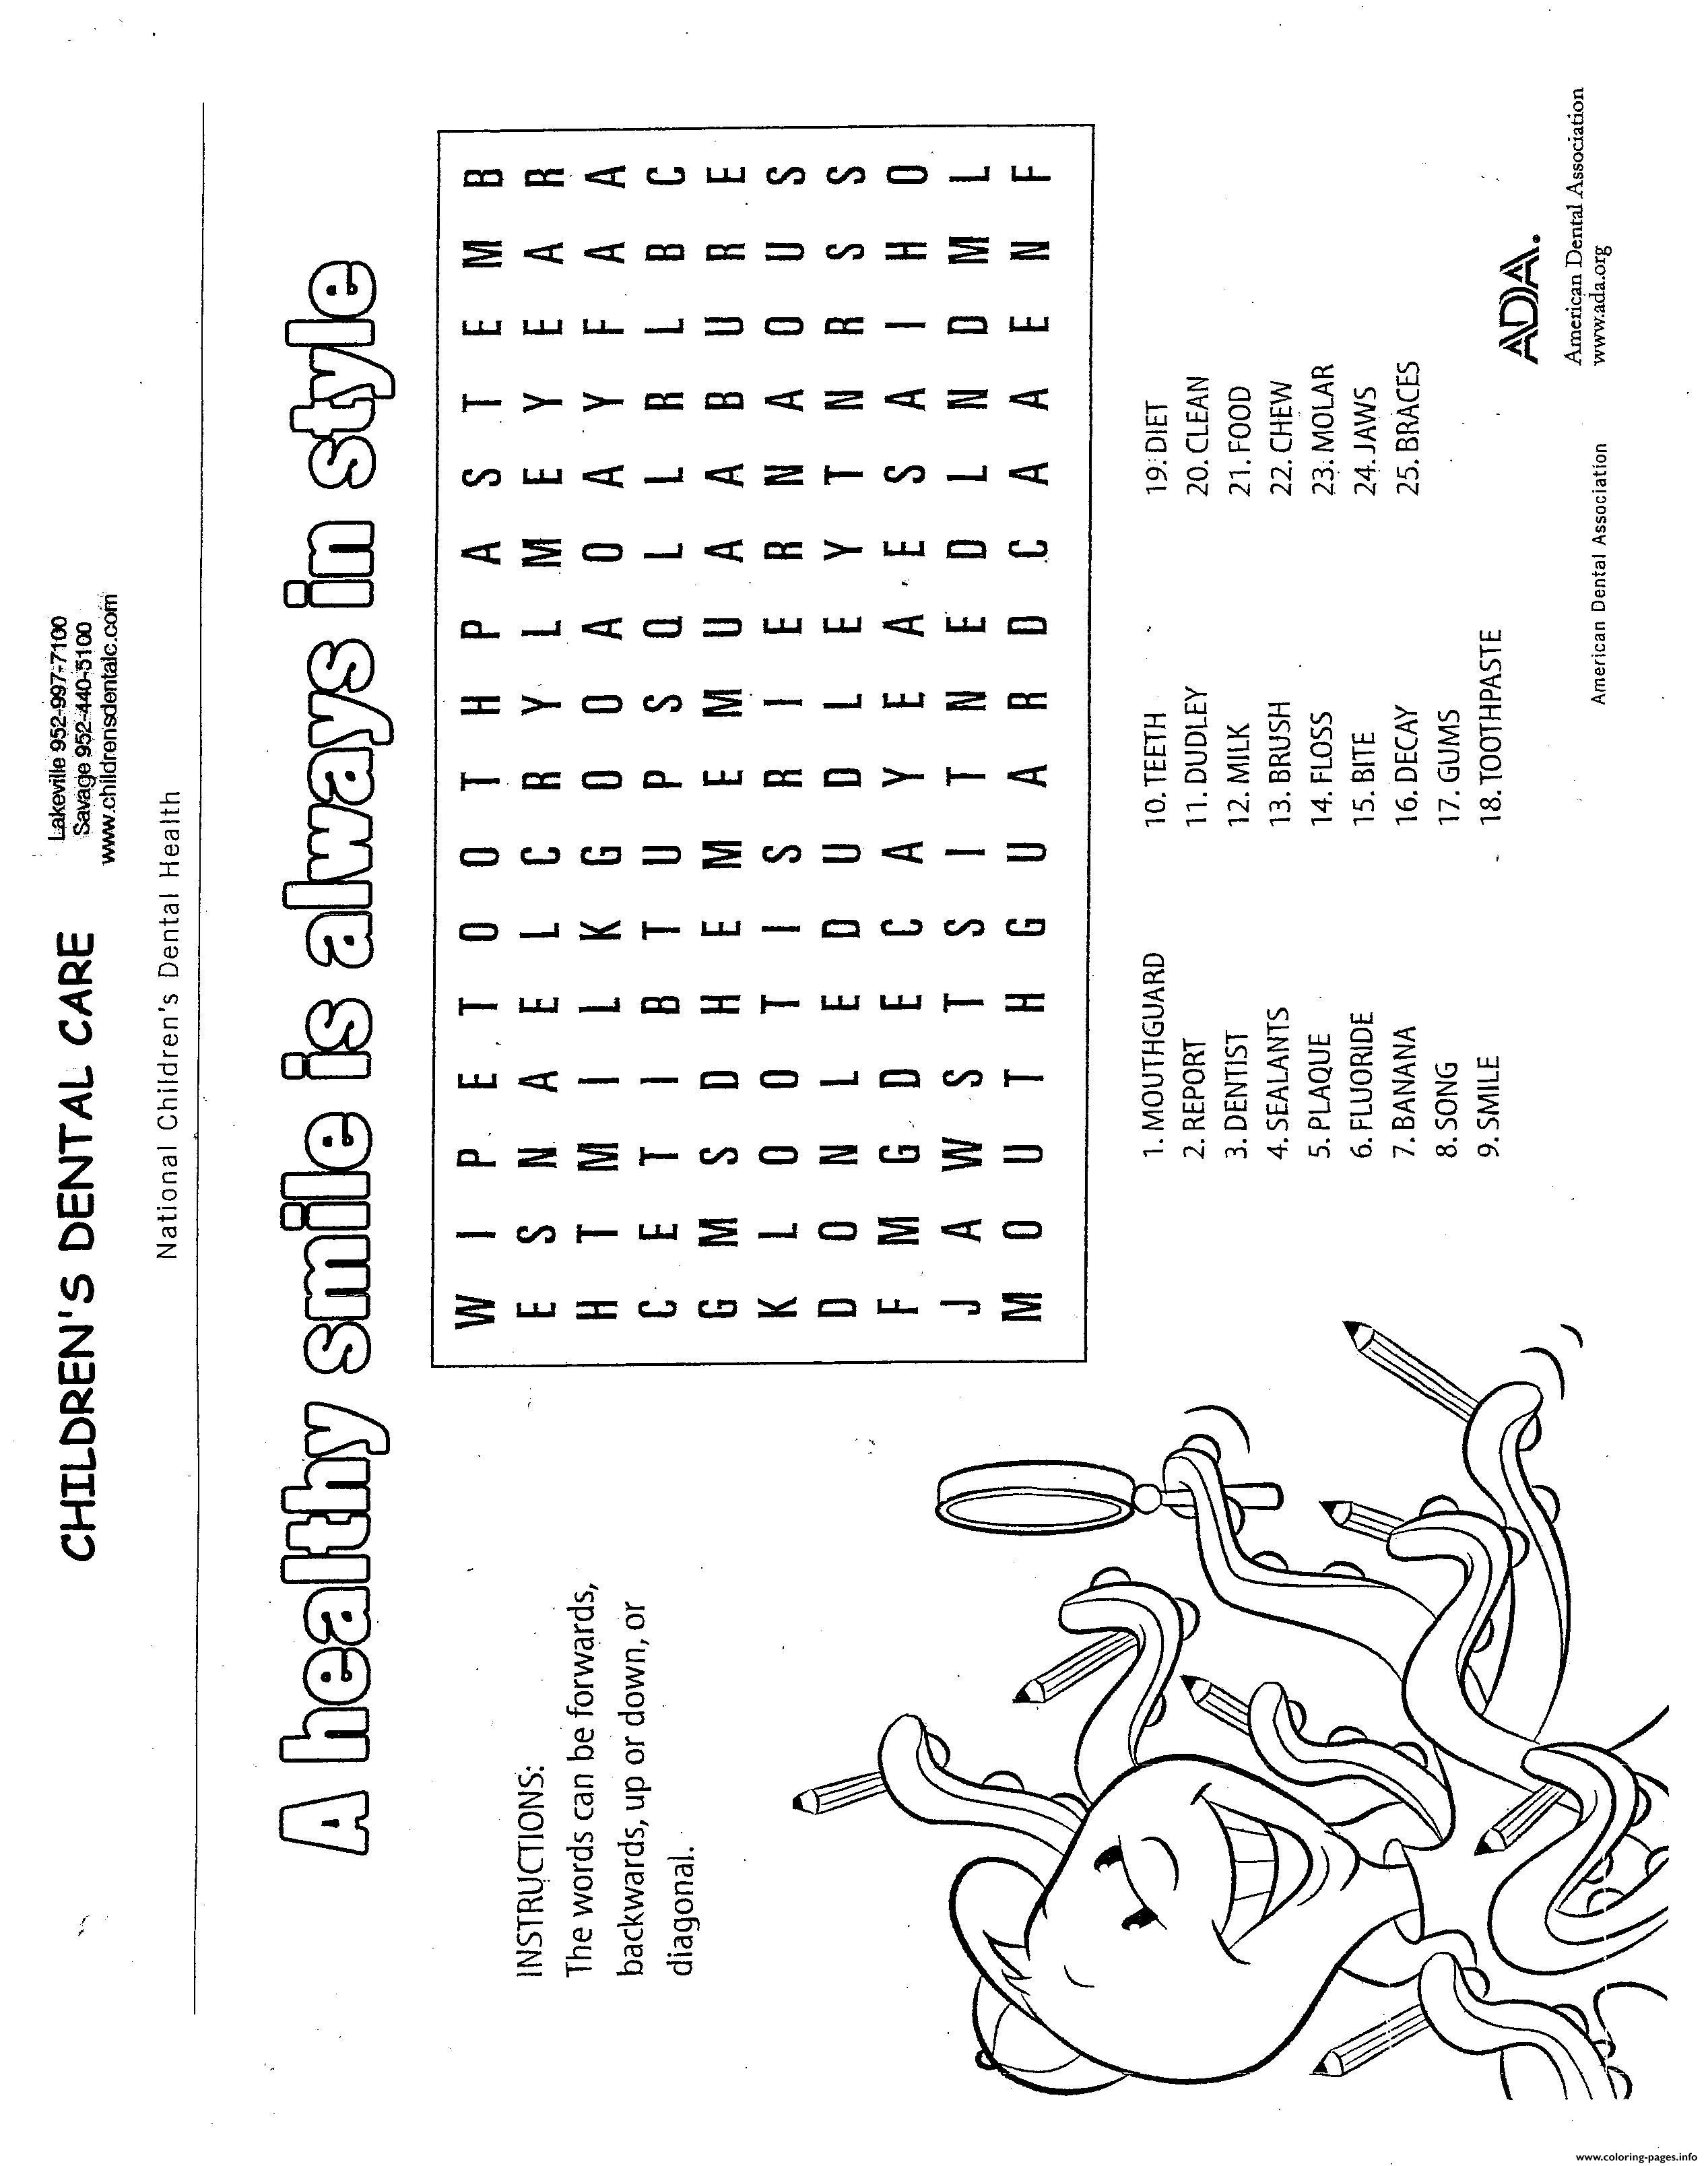 Dentist Worksheets for Kindergarten Activity Sheets Childrens Dental Care Coloring Pages Printable